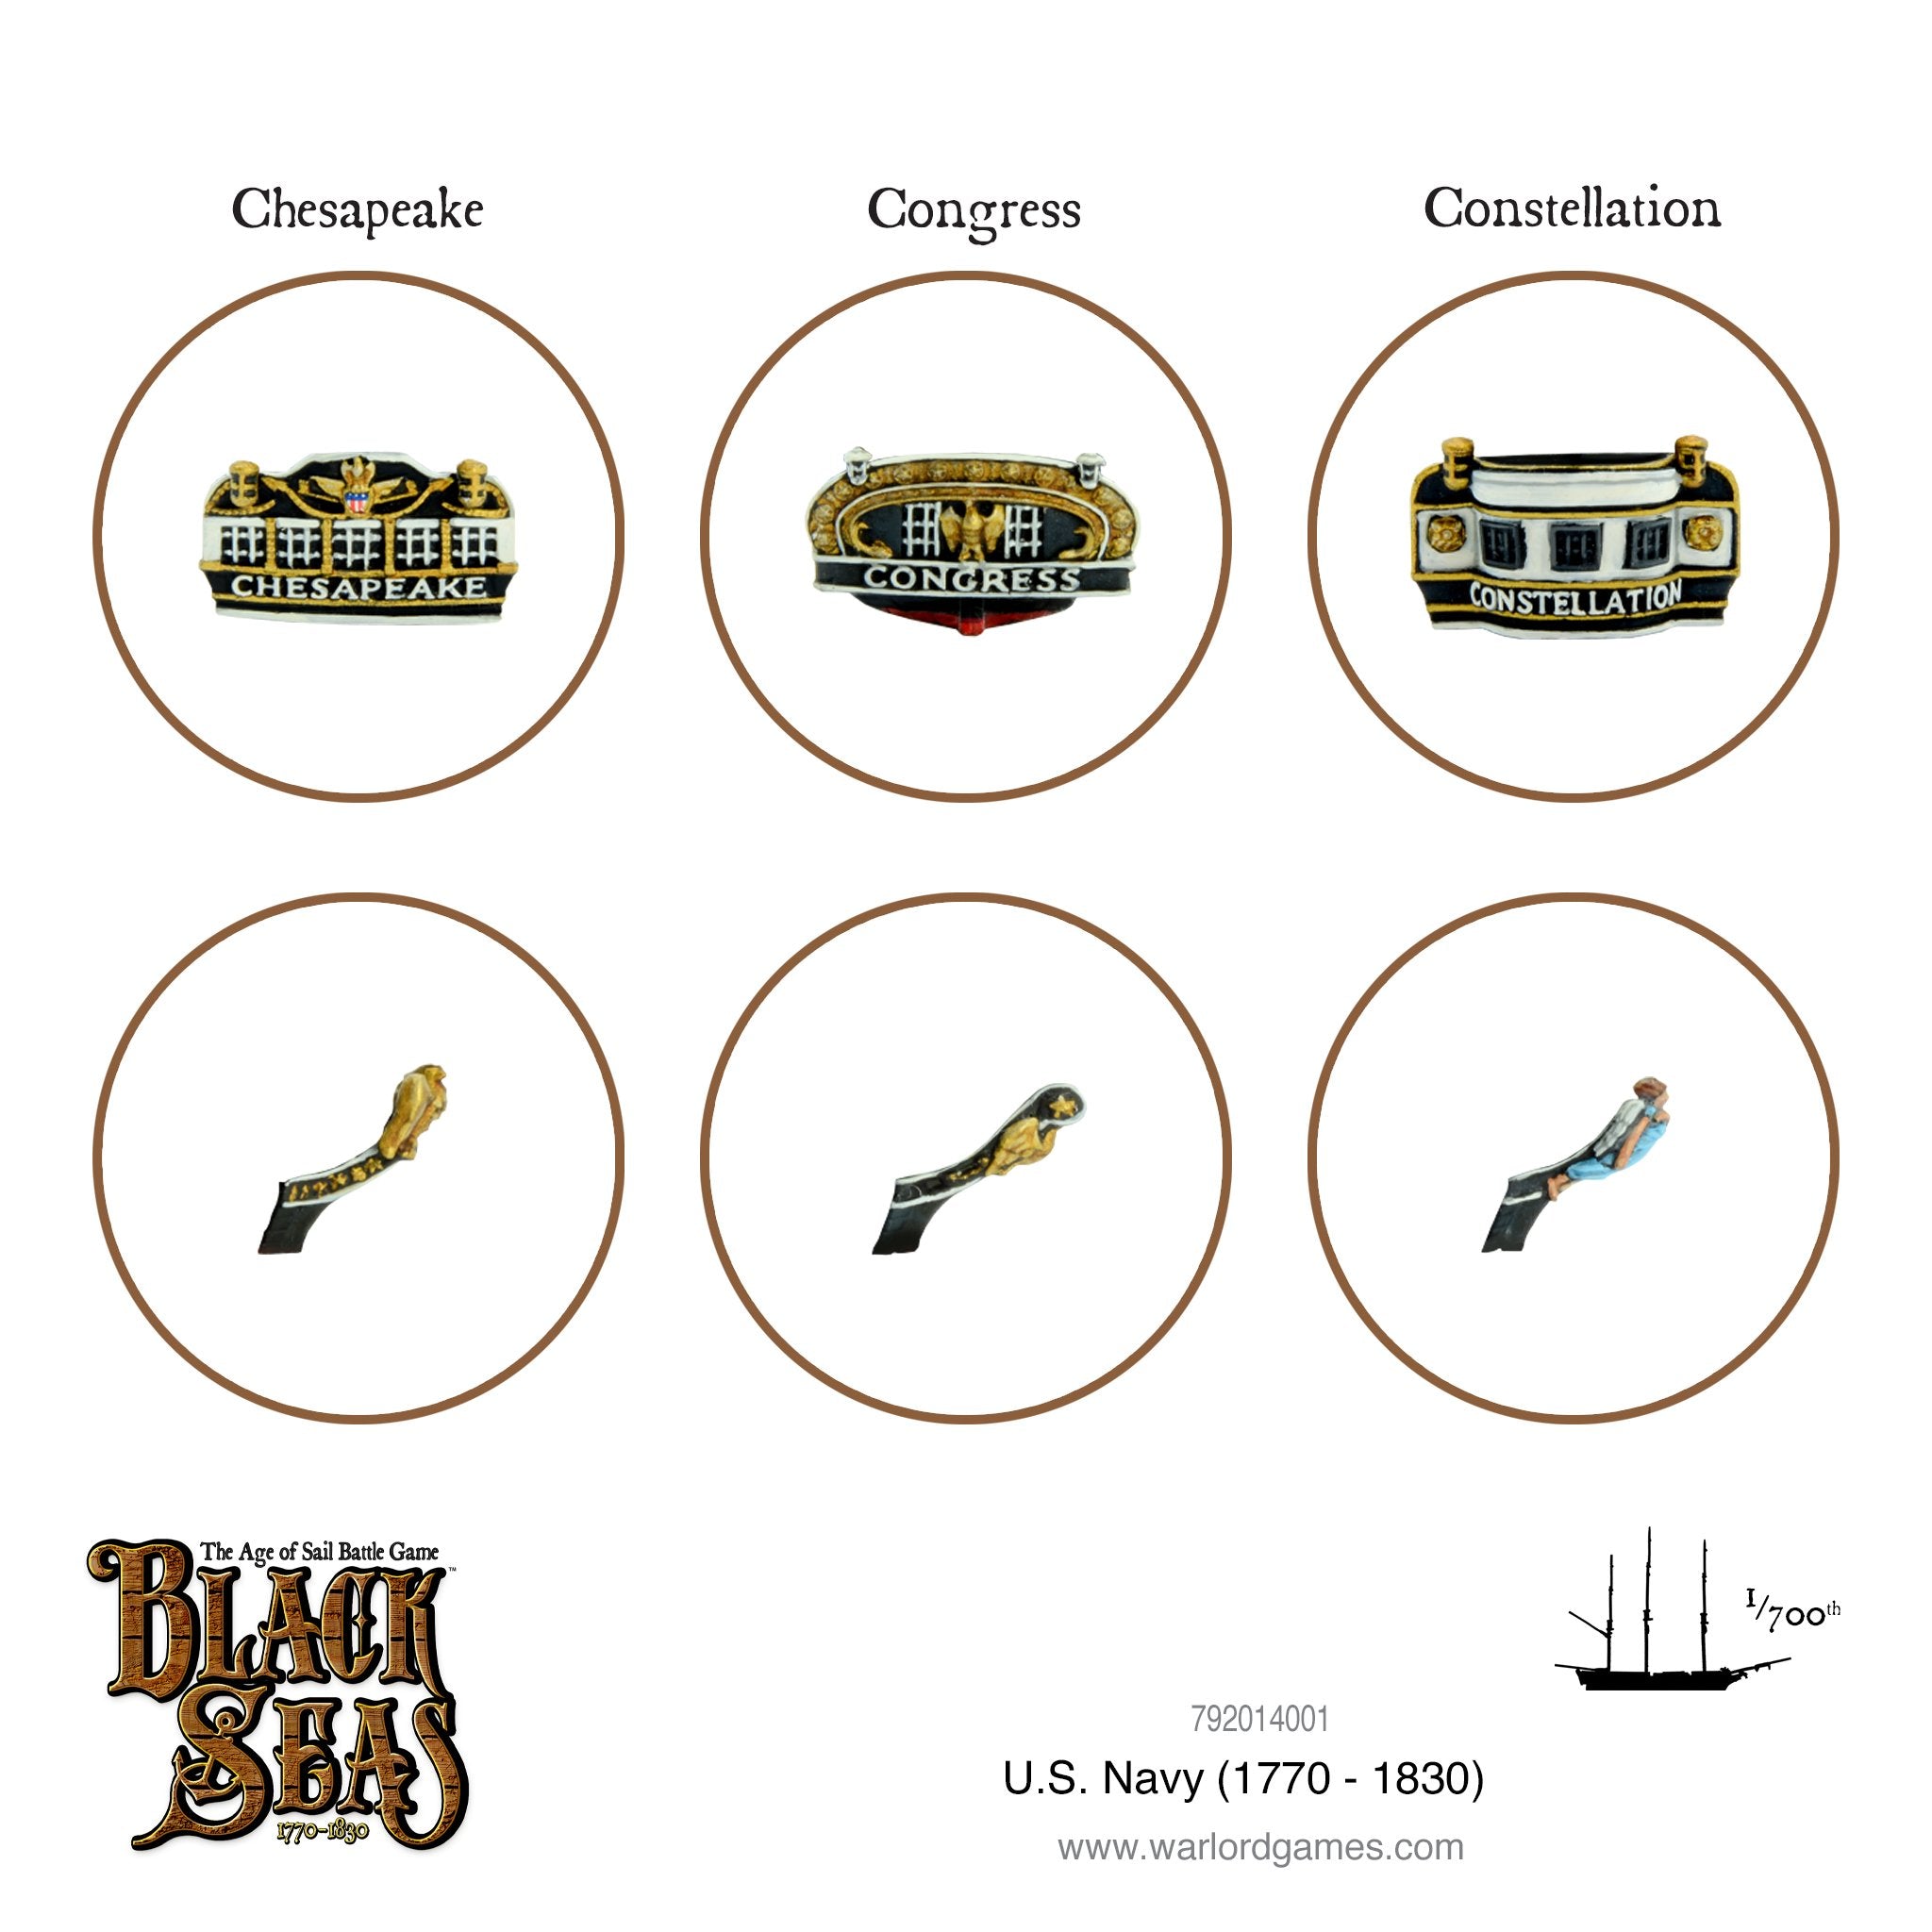 U.S. Navy Fleet (1770 - 1830)